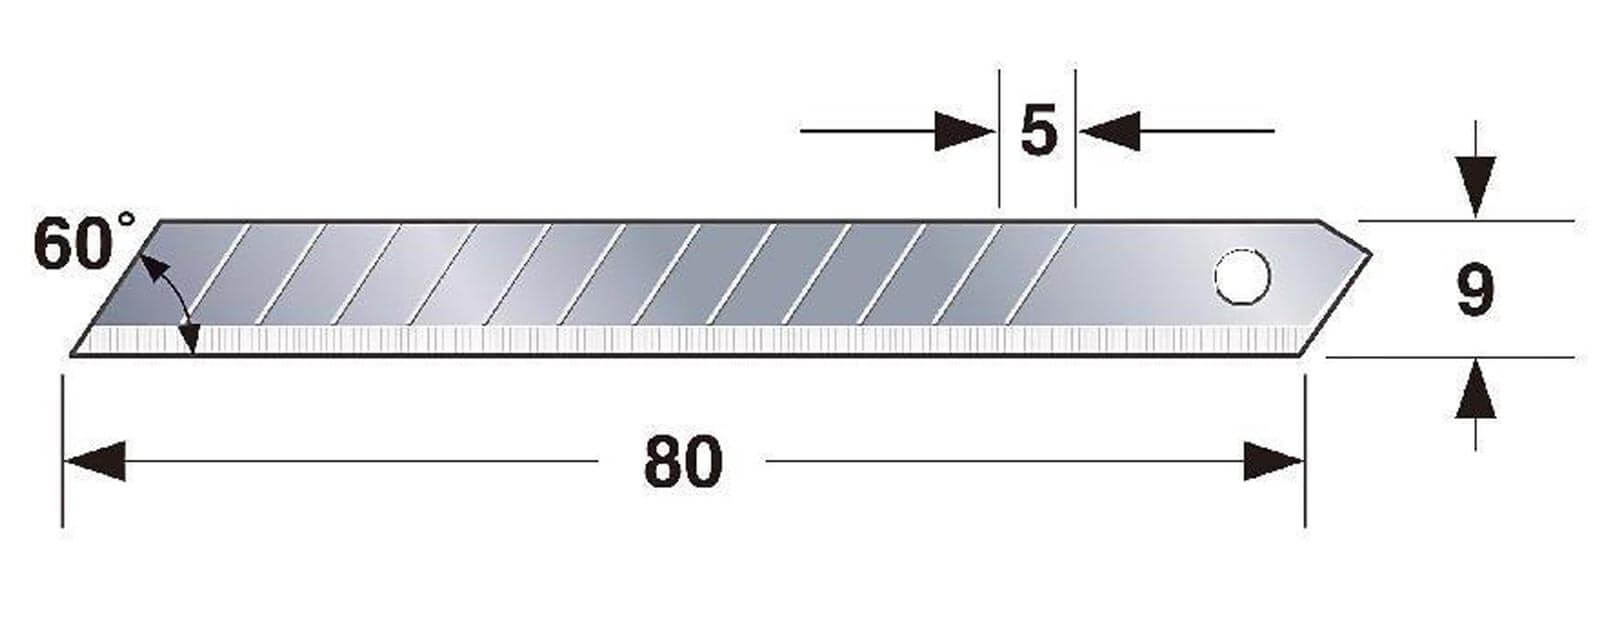 K061-Cuttermesser-Klinge-9mm-Tajima-LCB-30-Abmessungen-CURT-tools_1600